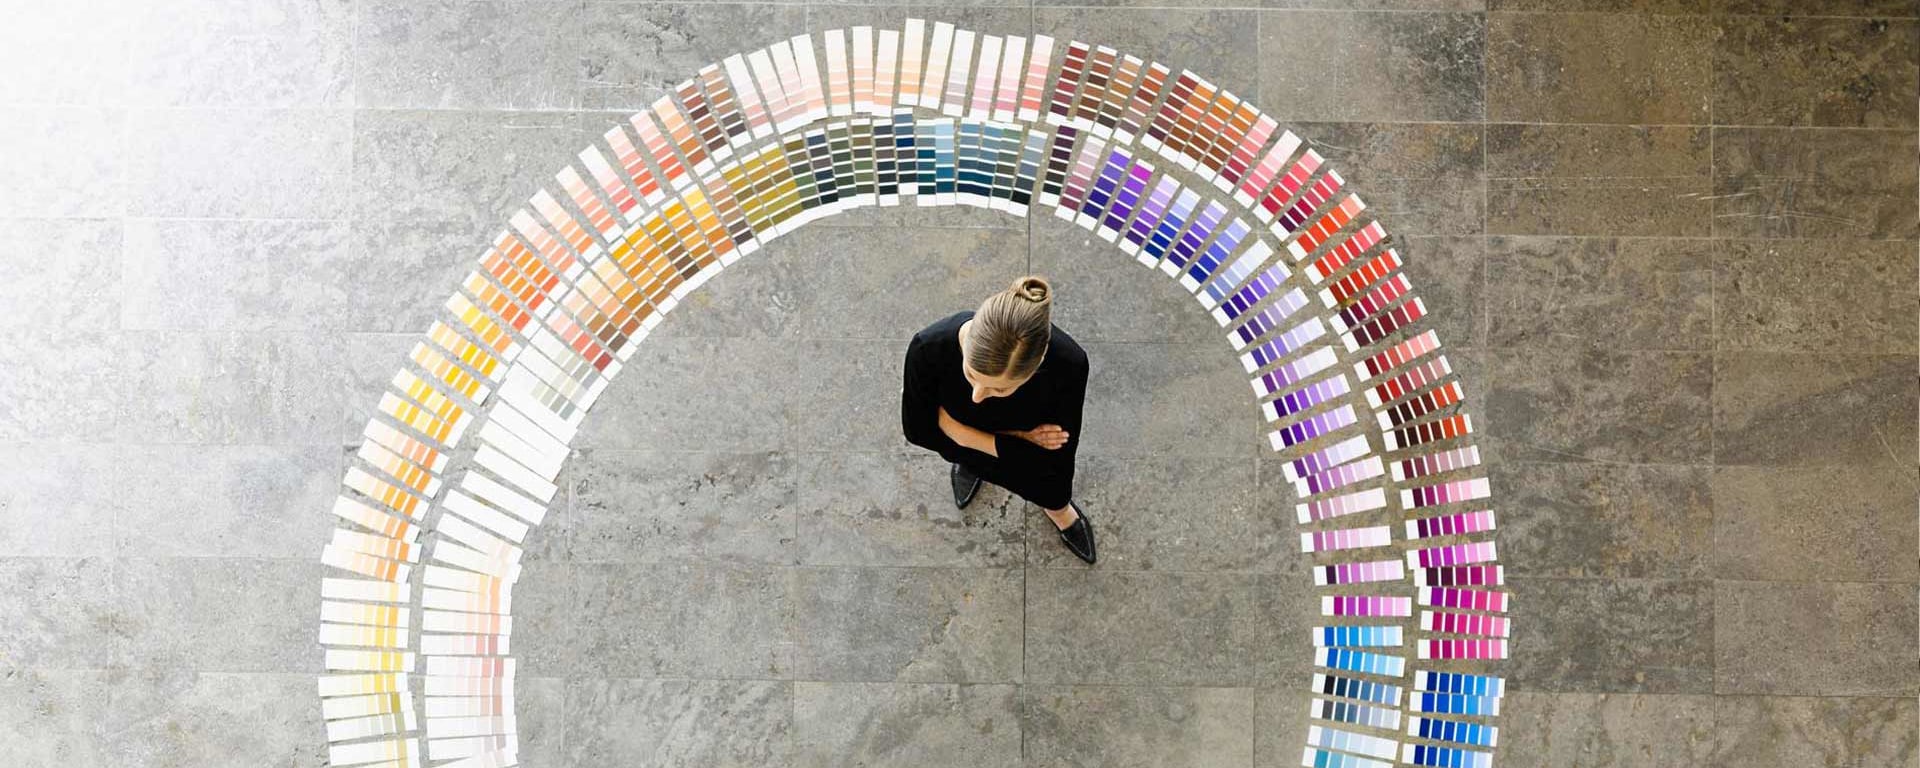 Eine Frau steht vor einem Kreis mit unterschiedlichen Farben und denkt nach